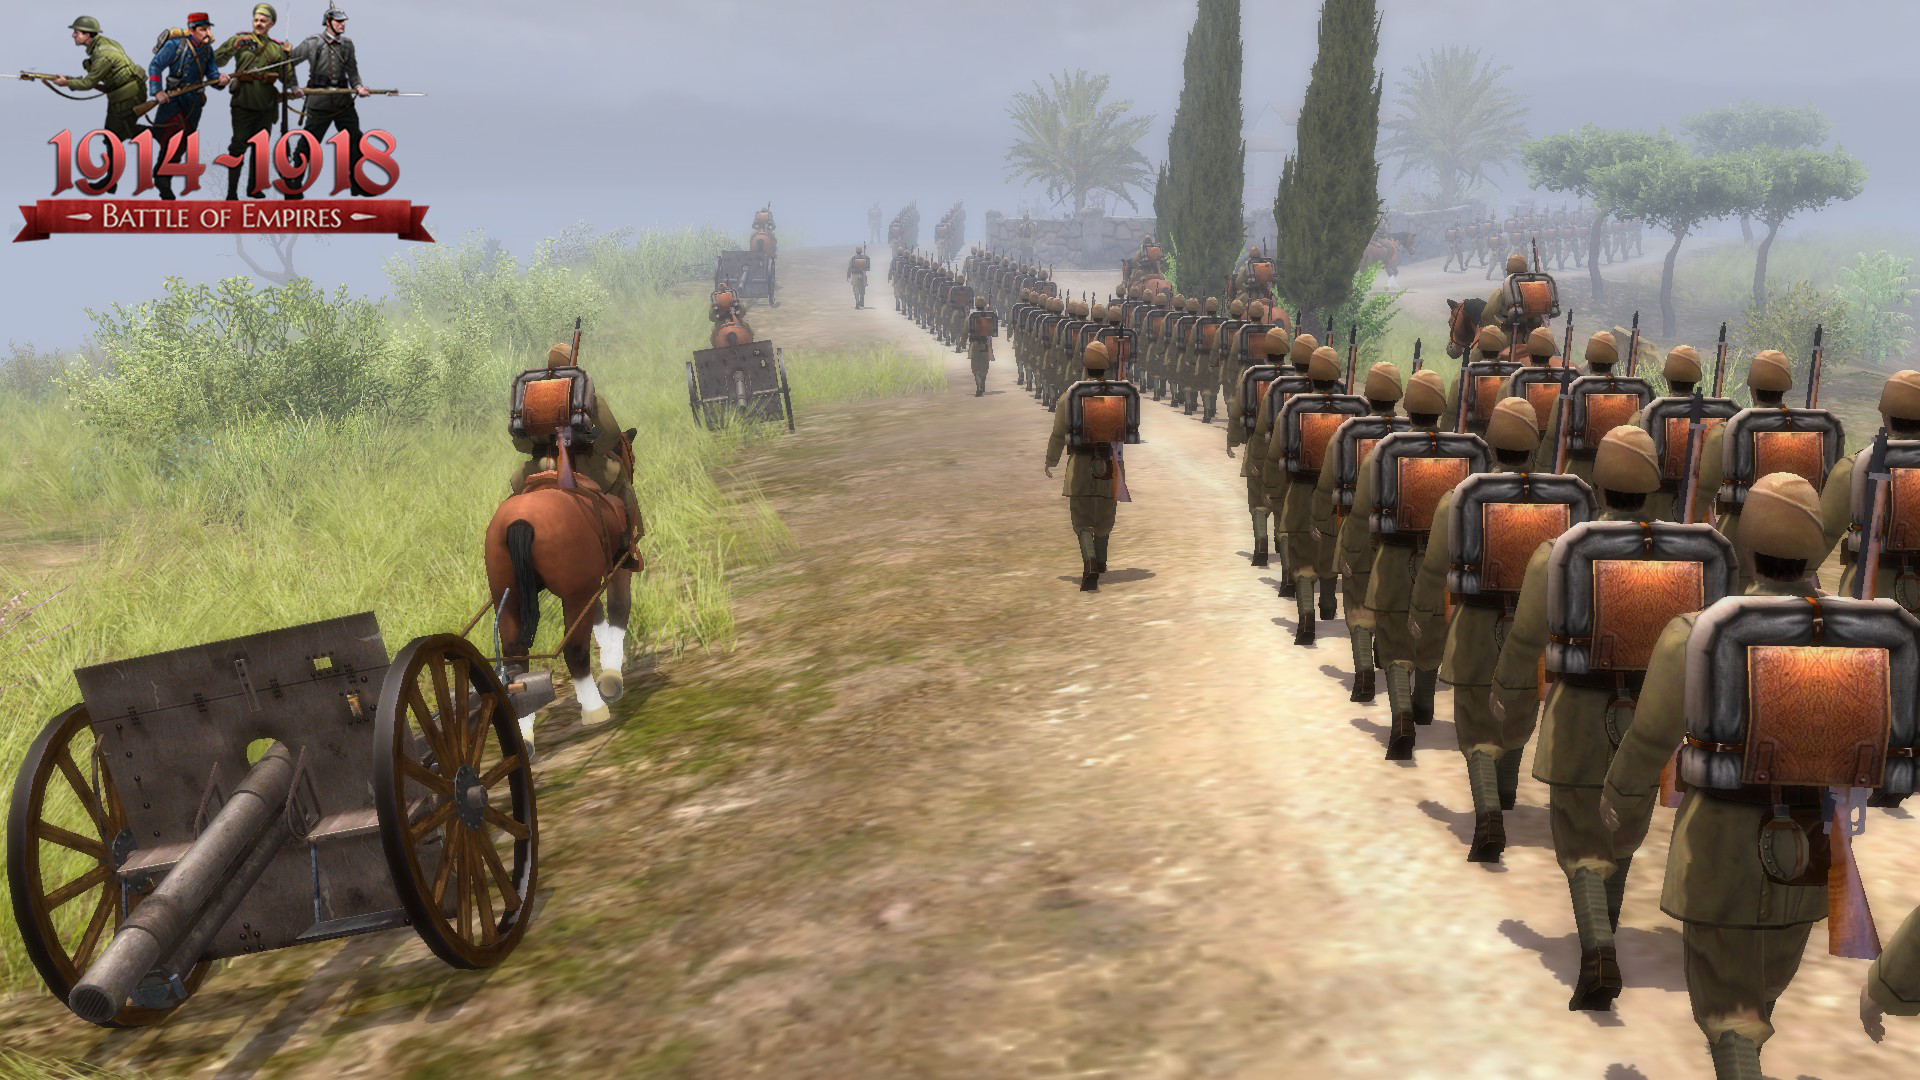 Battle of Empires: 1914-1918 - Ottoman Empire Featured Screenshot #1